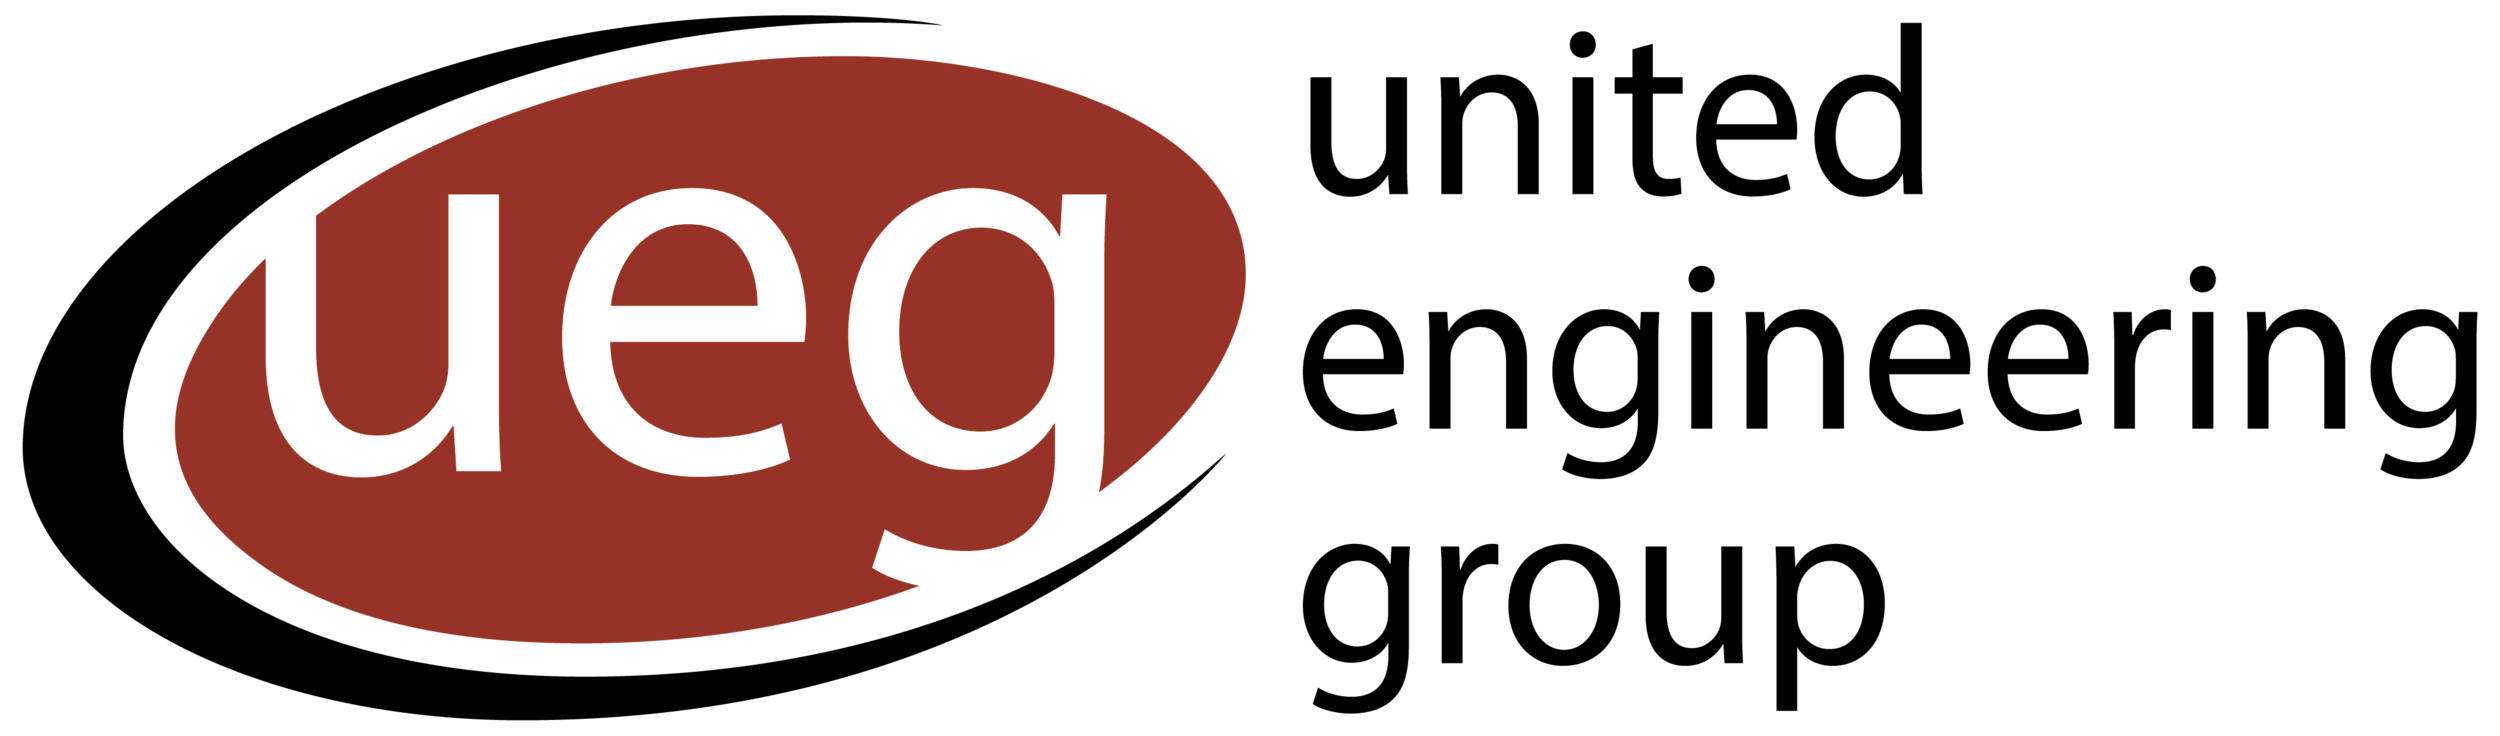 UEG Logo-01.png